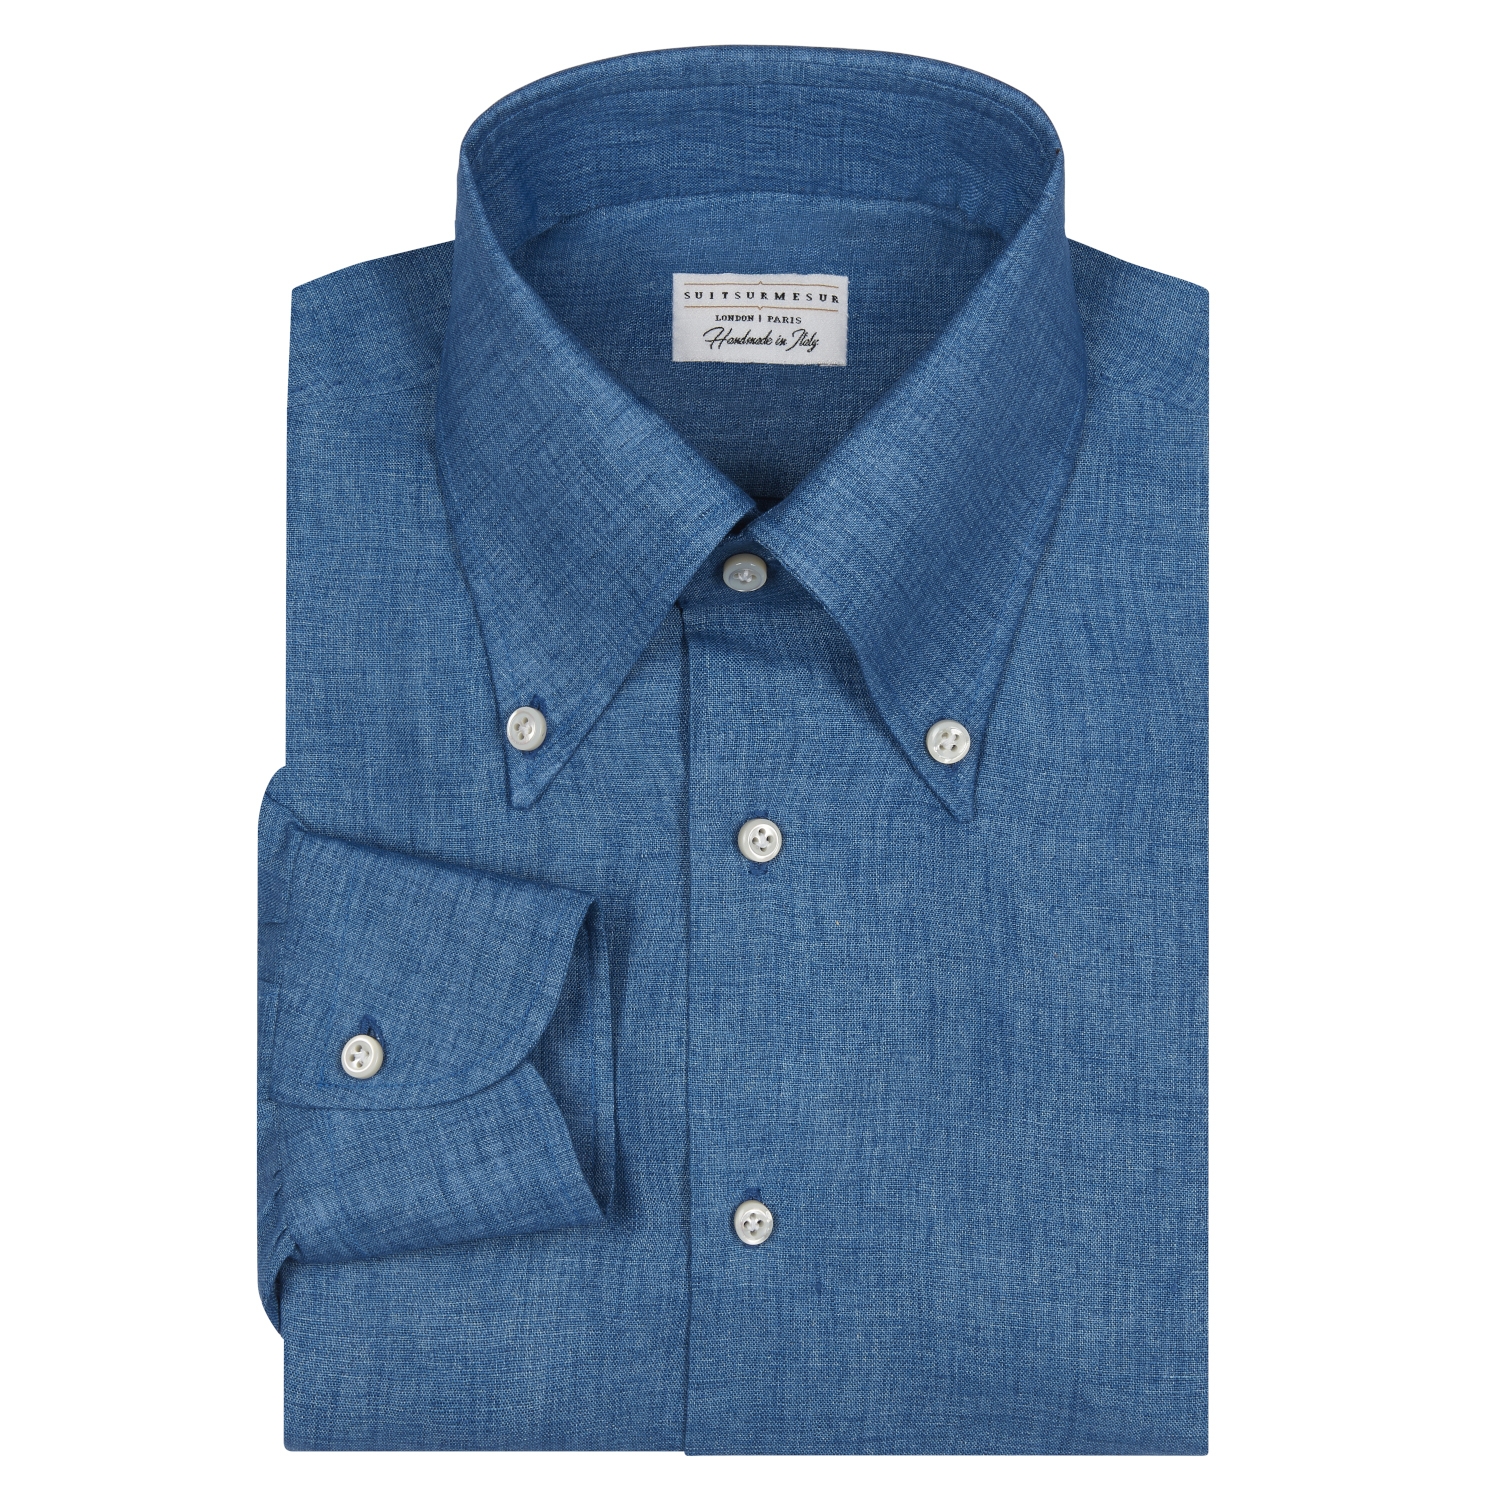 Chambray “Denim” Linen Button Down Collar Shirt